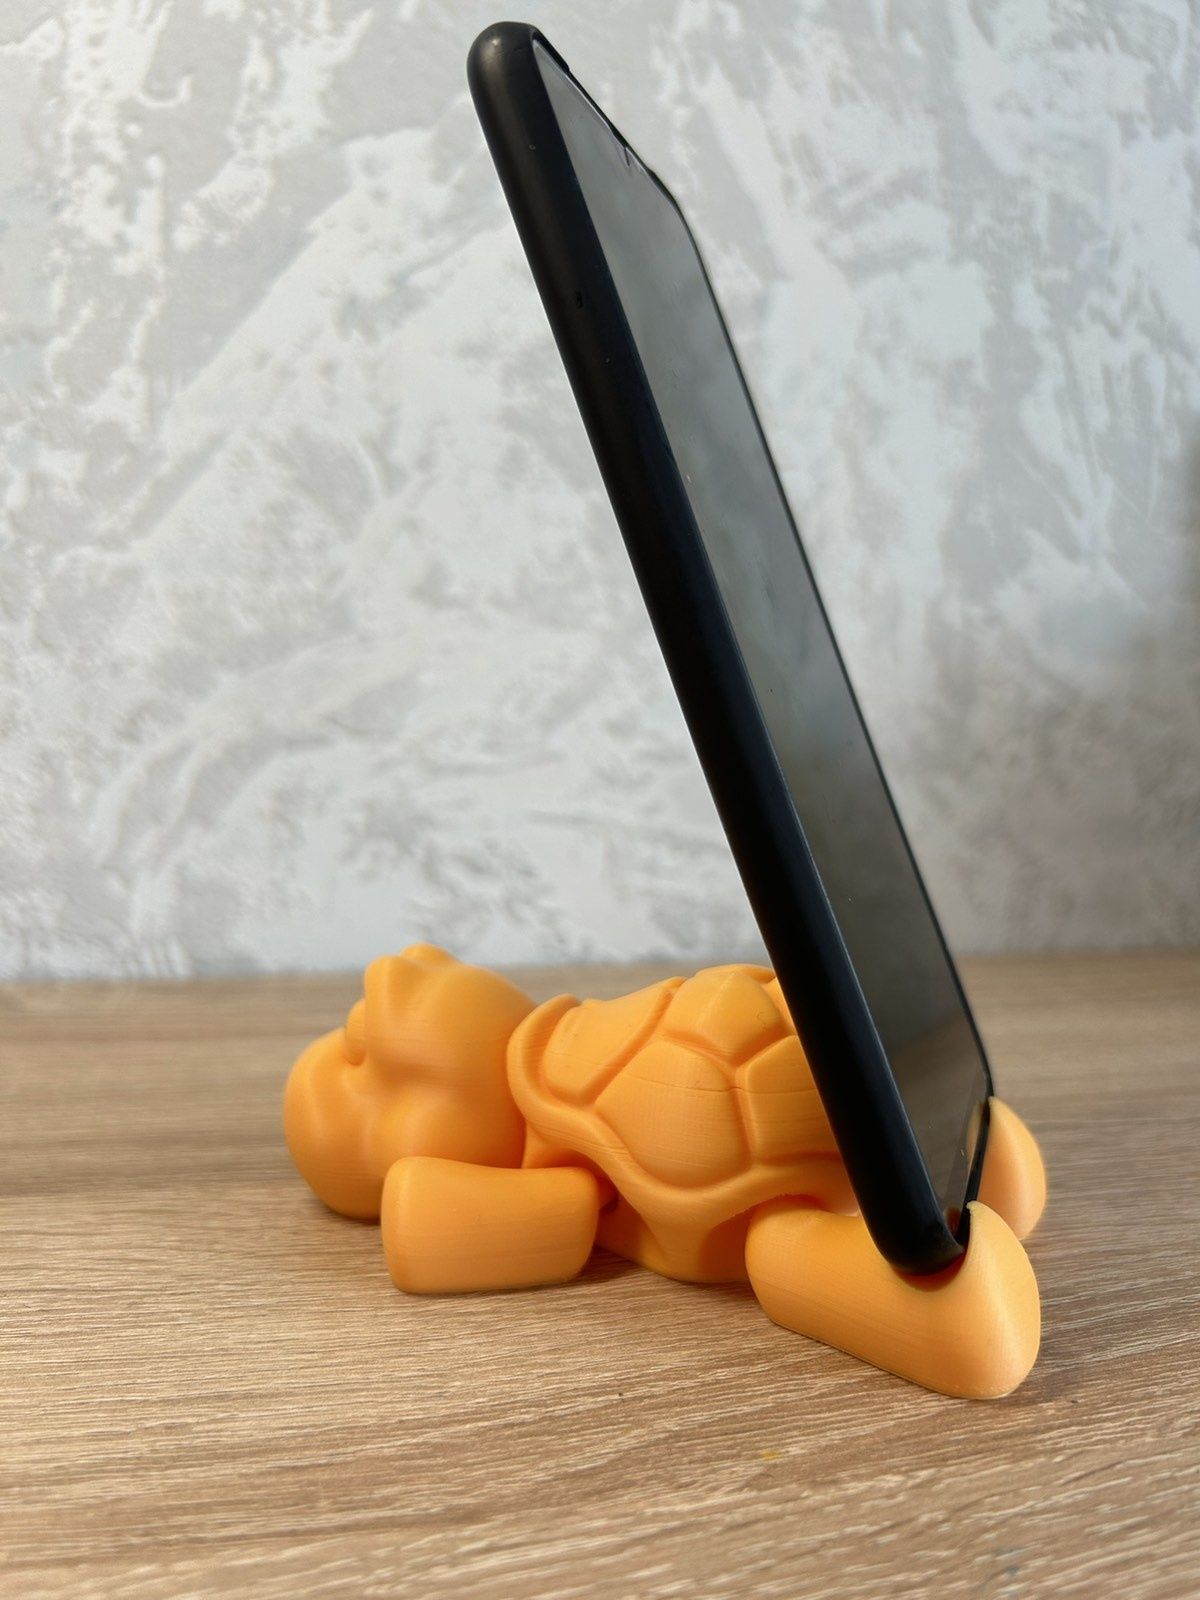 Підставка для телефона зроблена на 3D принтери